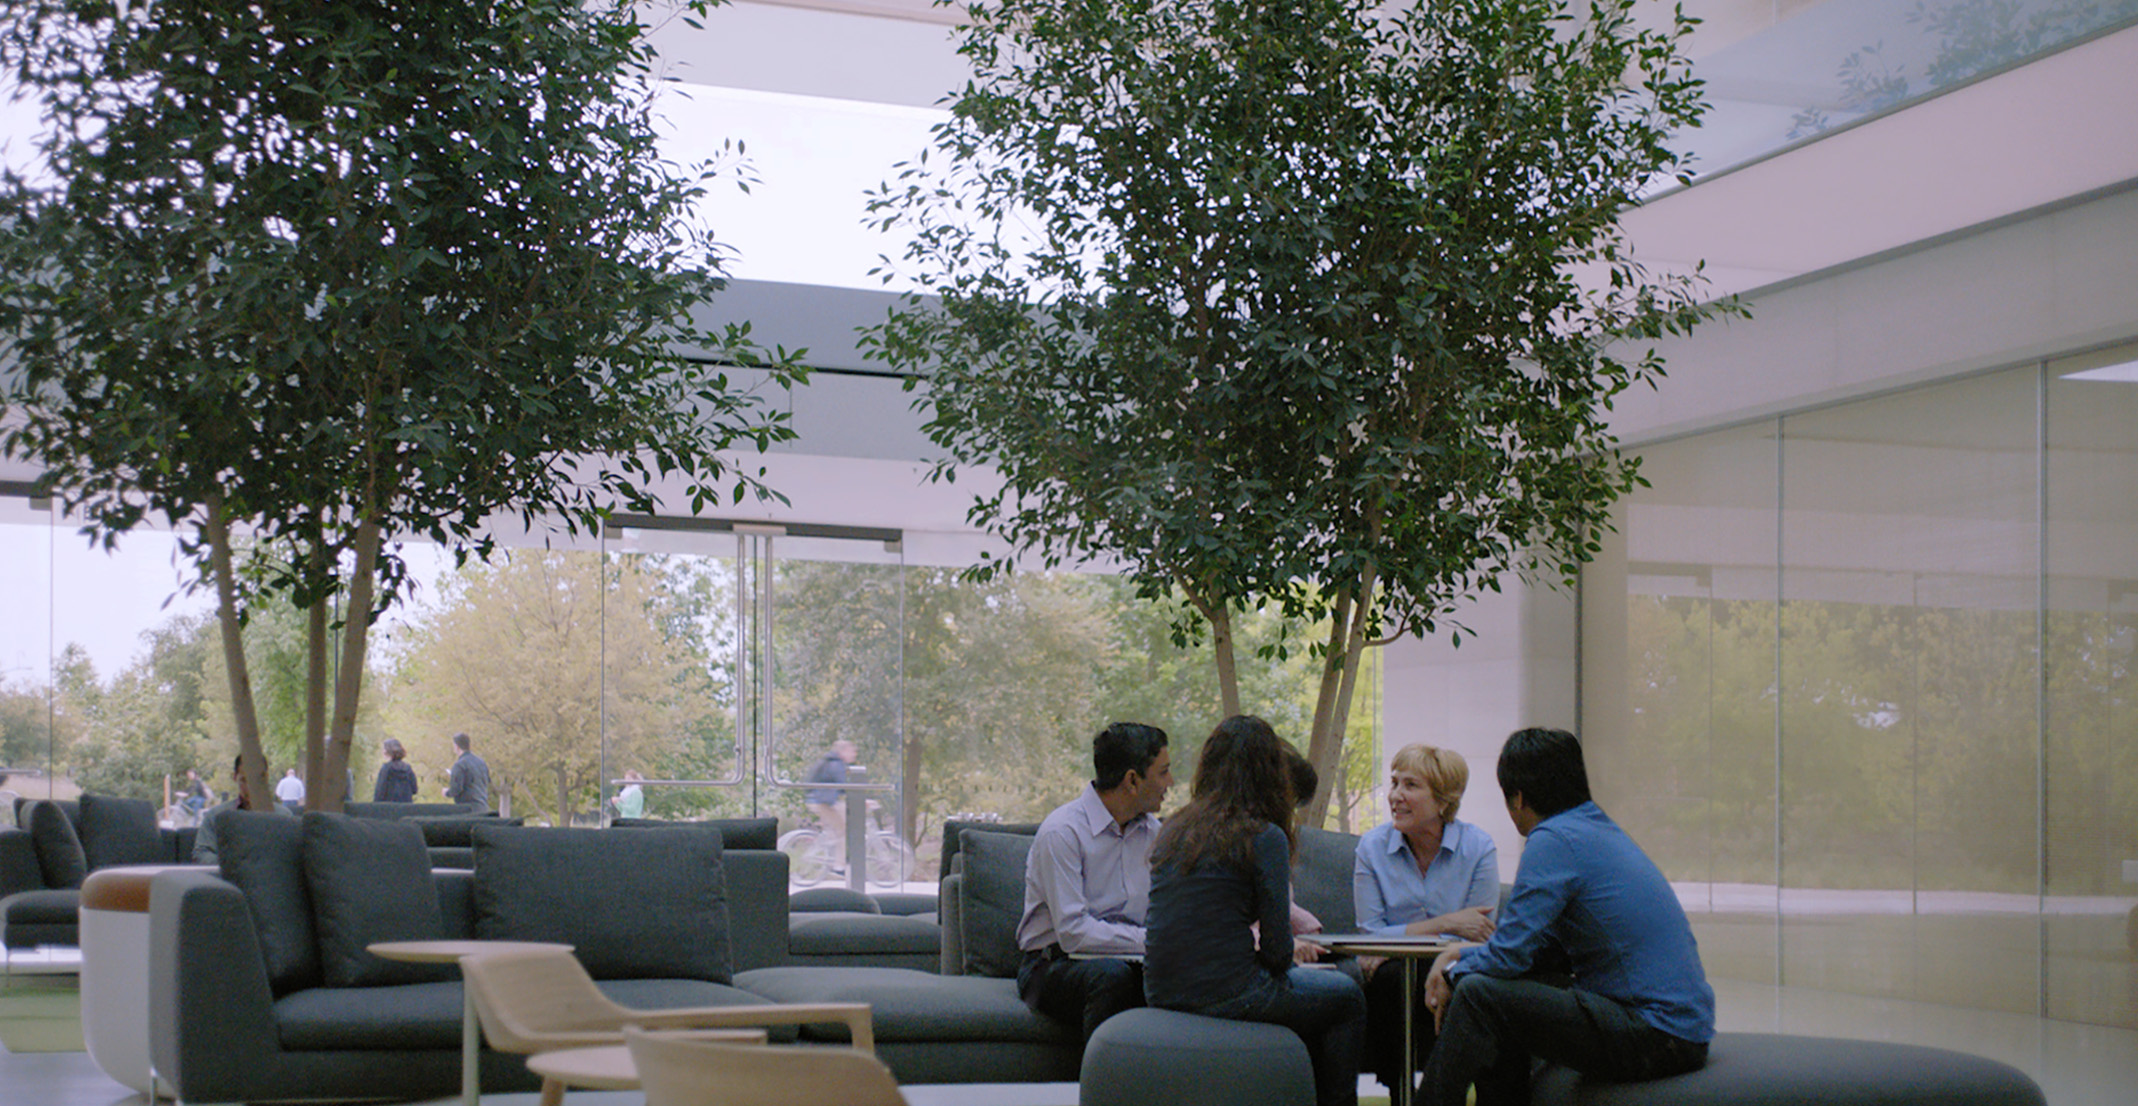 领导自然语言处理团队的 Giulia 与其他 Apple 员工坐在桌旁。